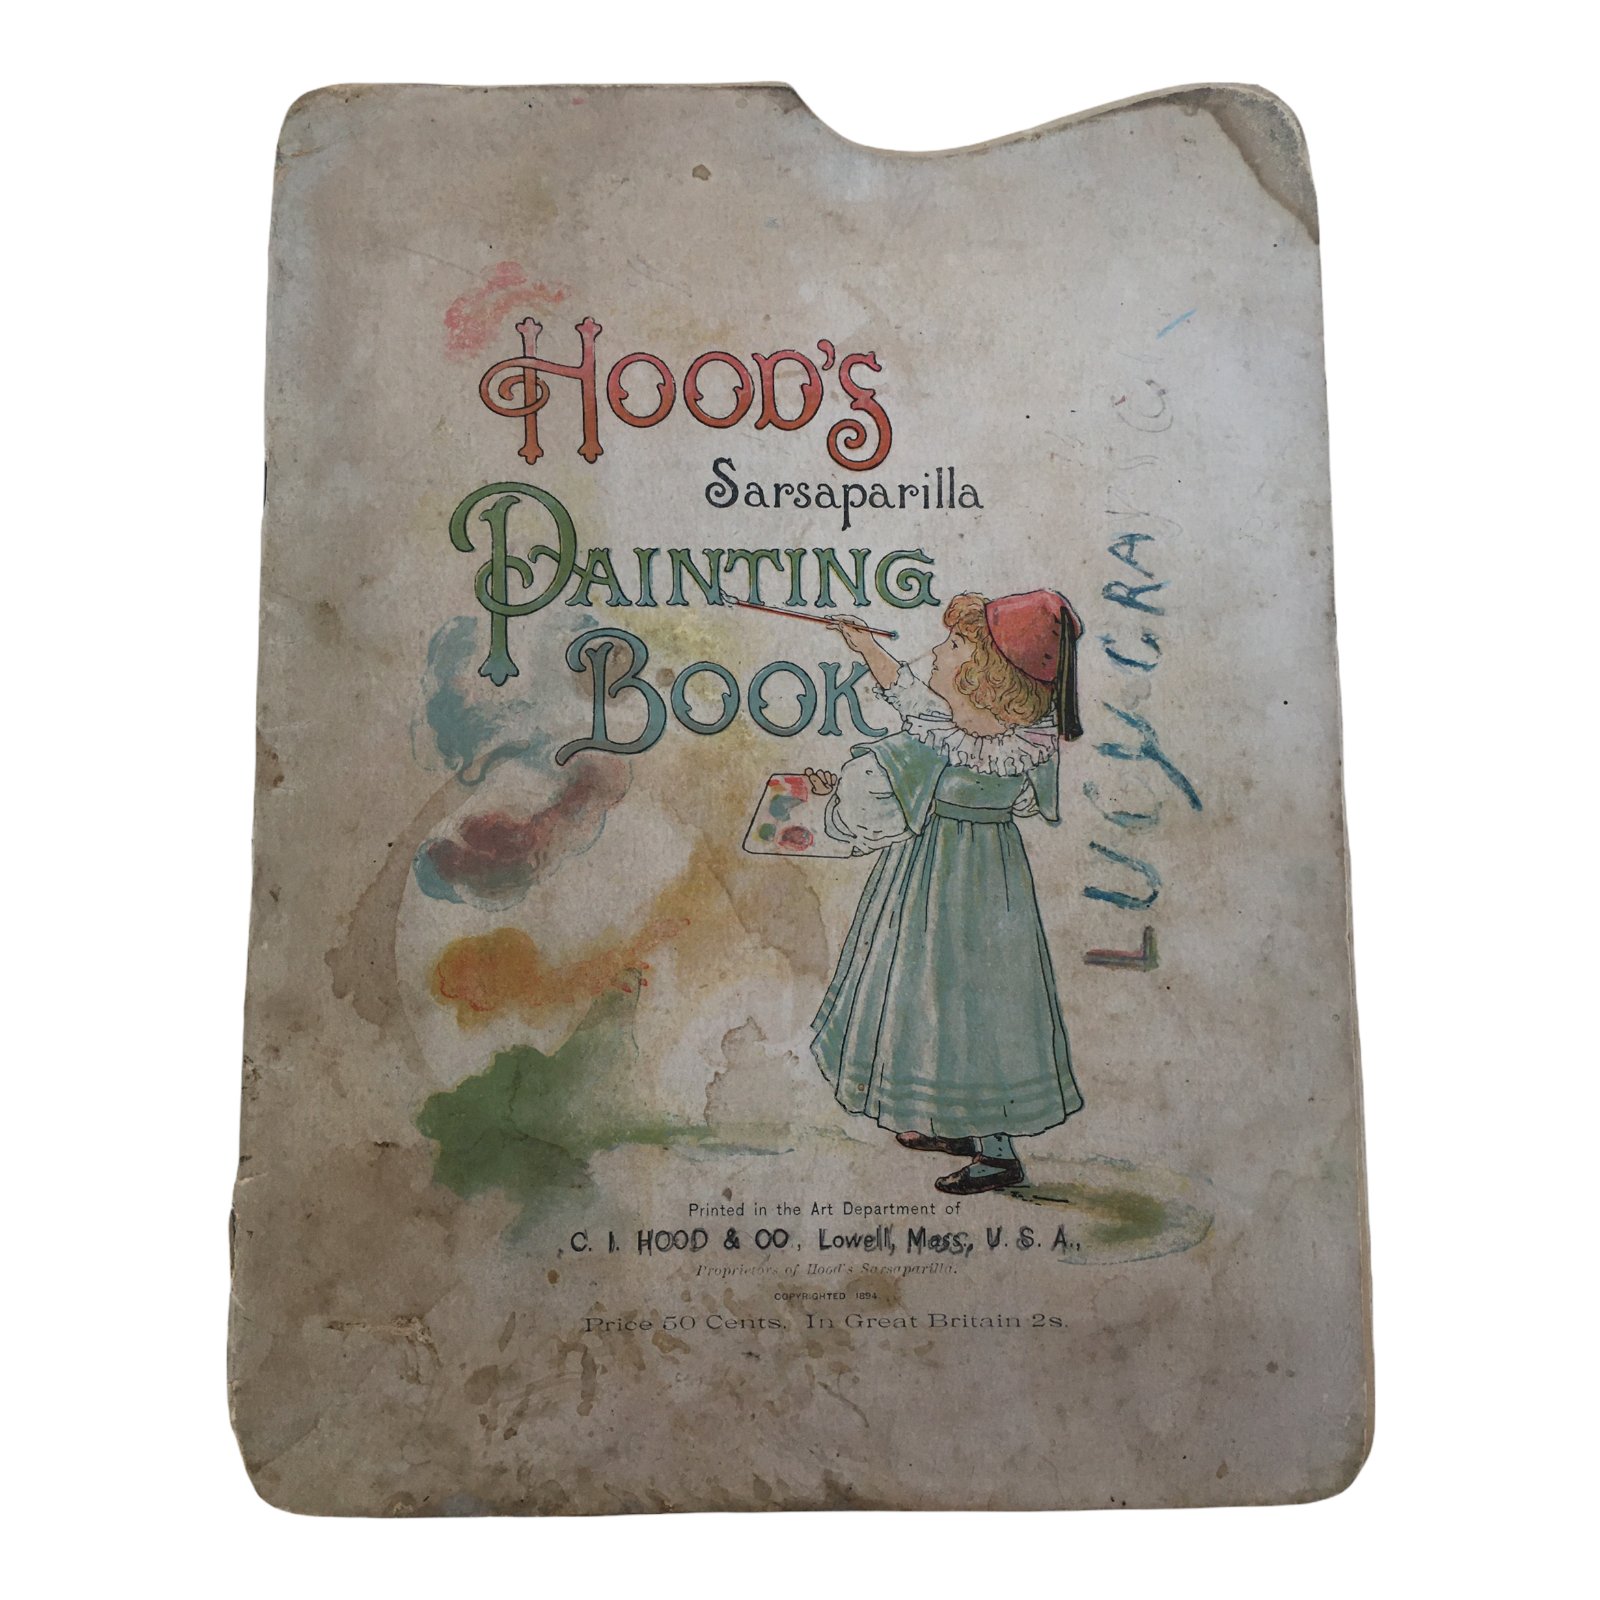 Hoods sarsaparilla painting book medicine advertising childrens art antique